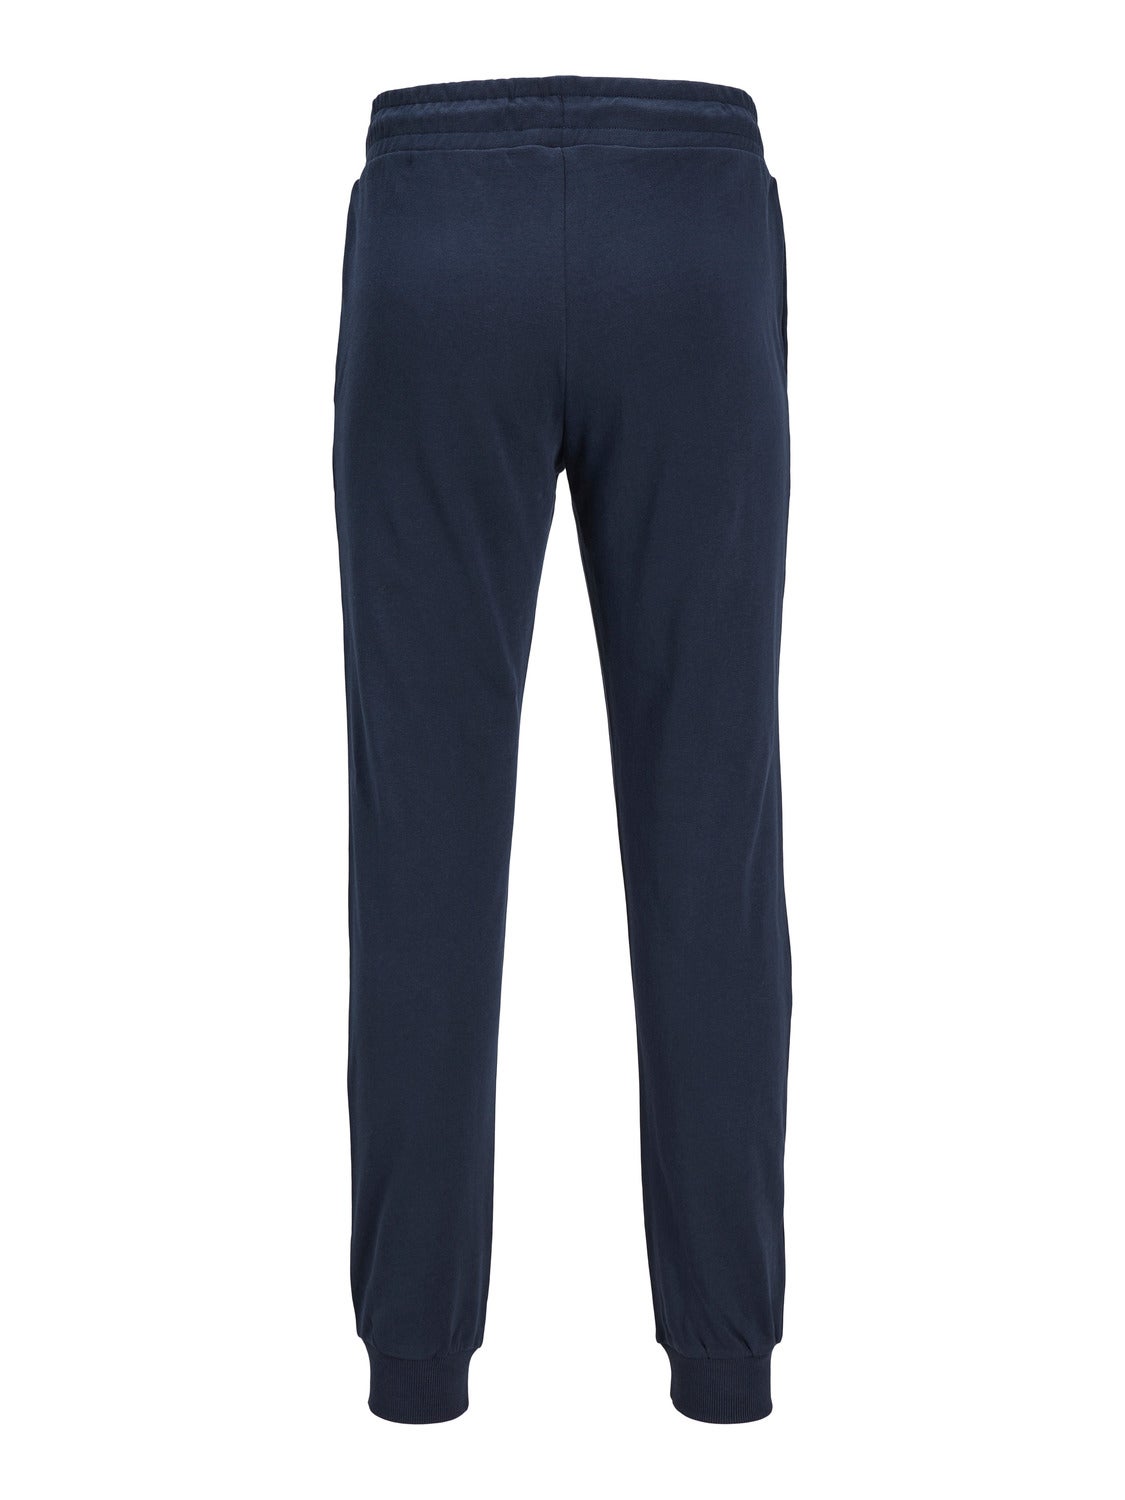 Adidas Women's Sst Plus Size Track Pants 65$ NWT 2X XXL | eBay